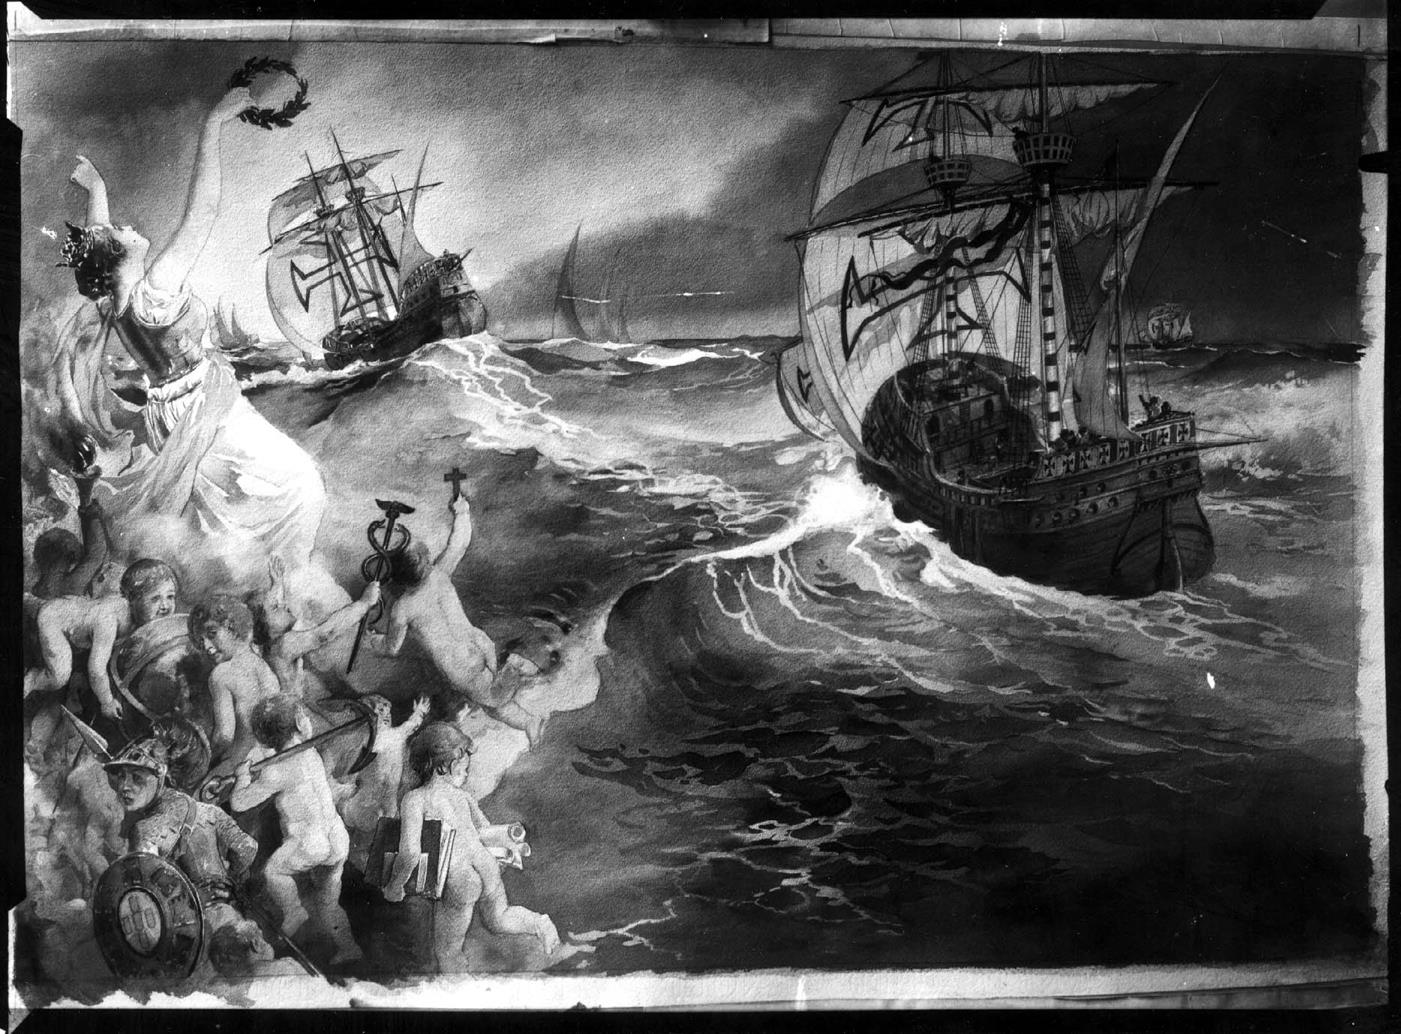 Naus portuguesas navegando no alto mar "Lusíadas" : obra de Roque Gameiro